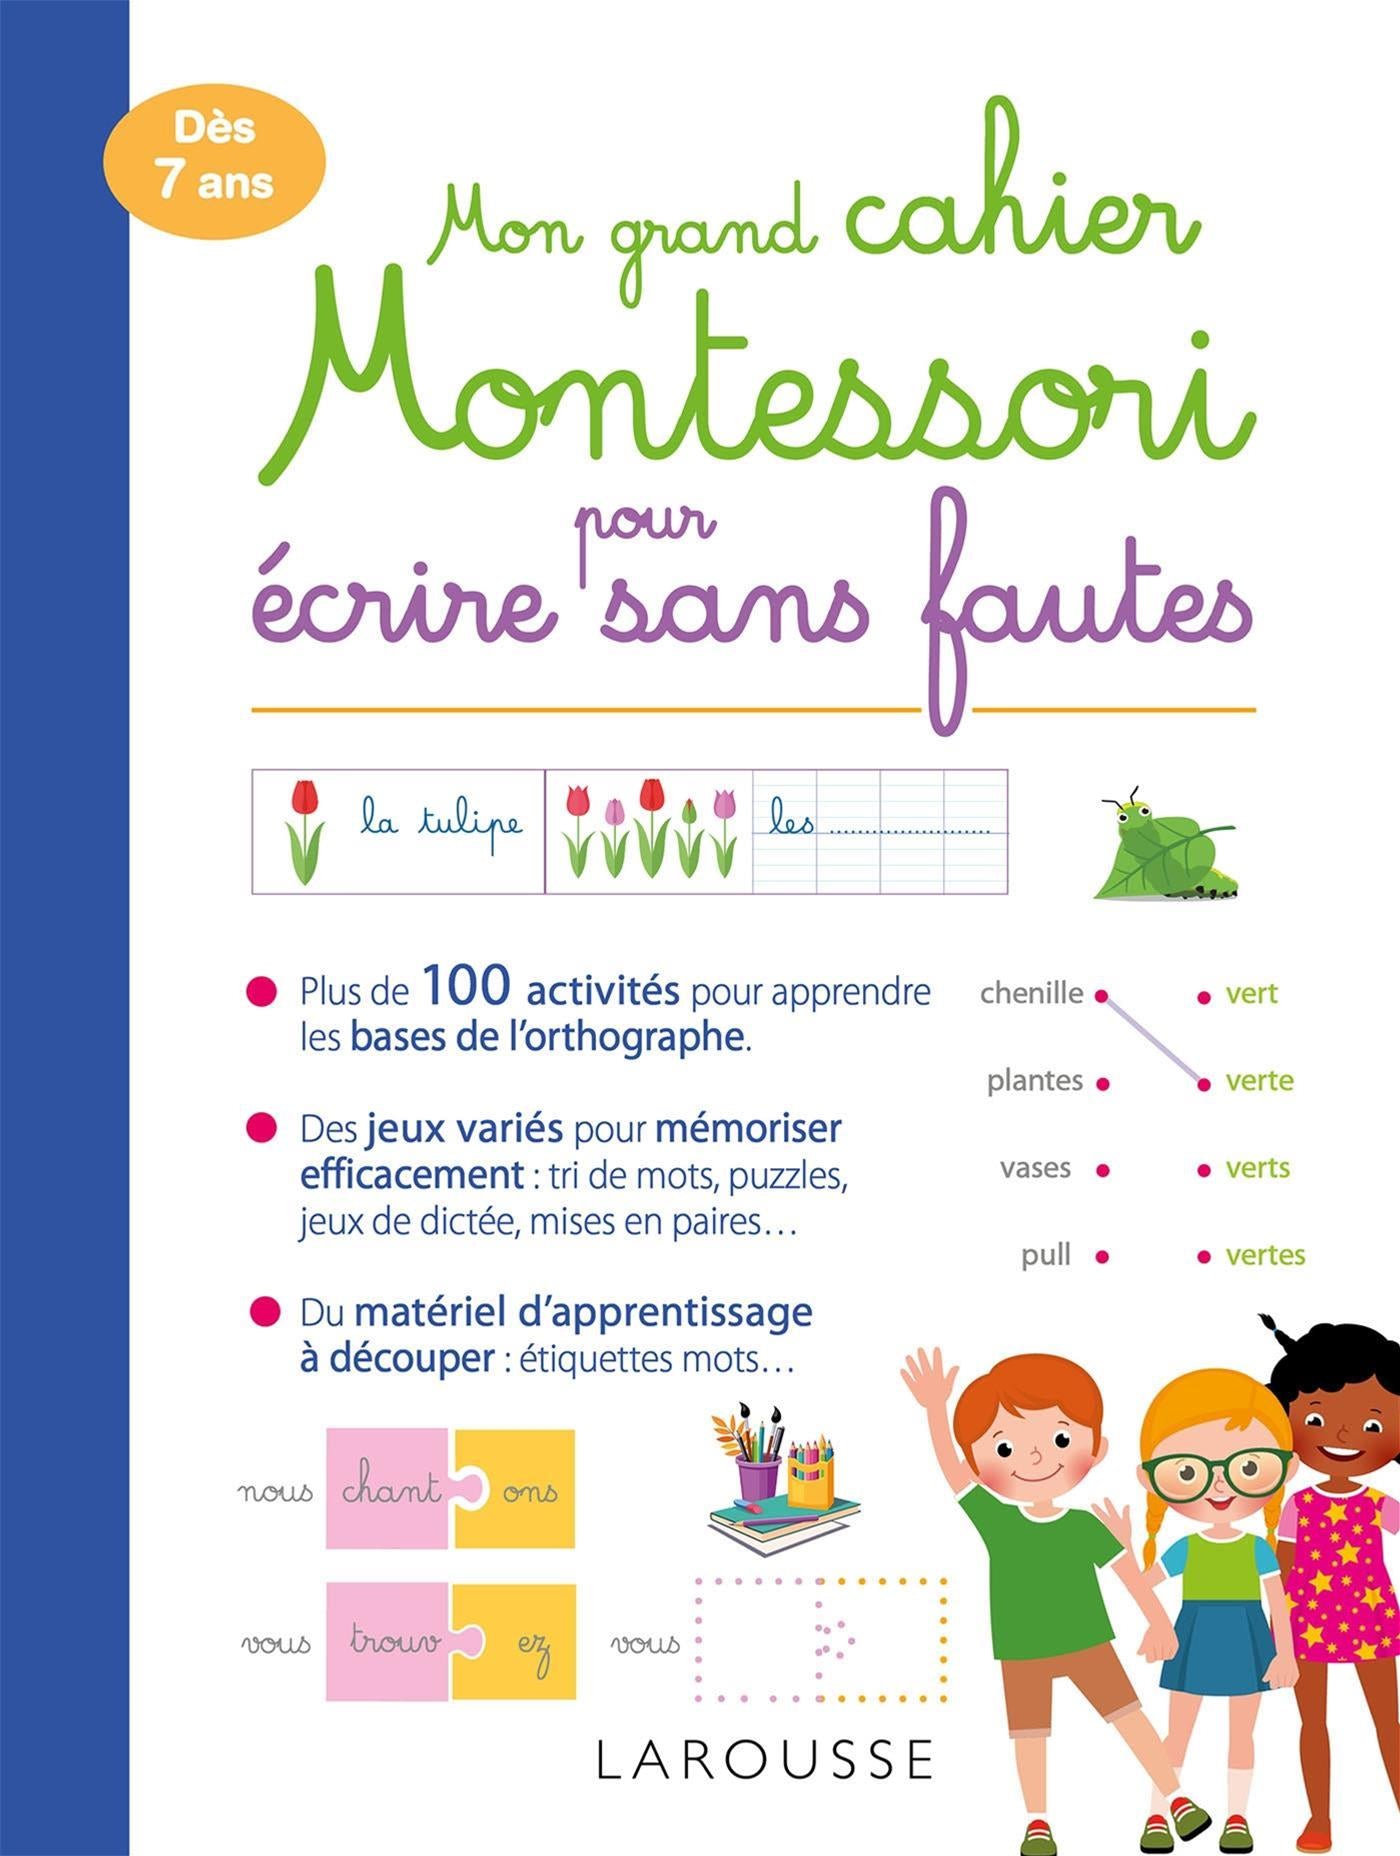 Mon grand cahier Montessori des maths : un cahier d'activités